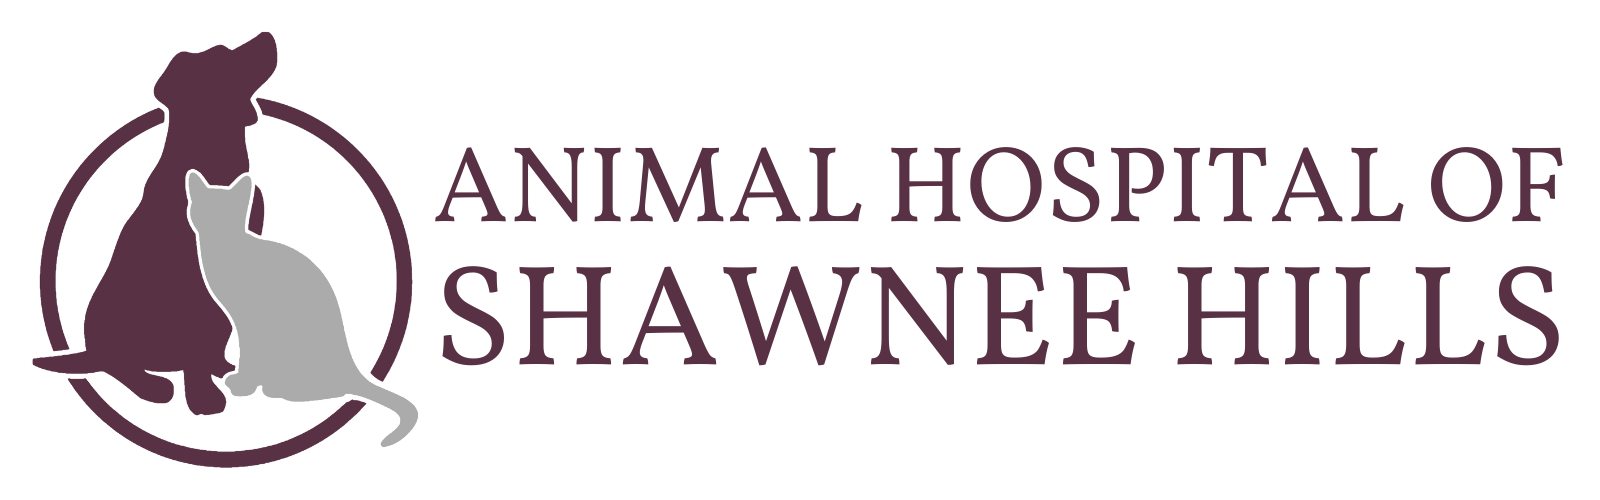 Animal Hospital of Shawnee Hills